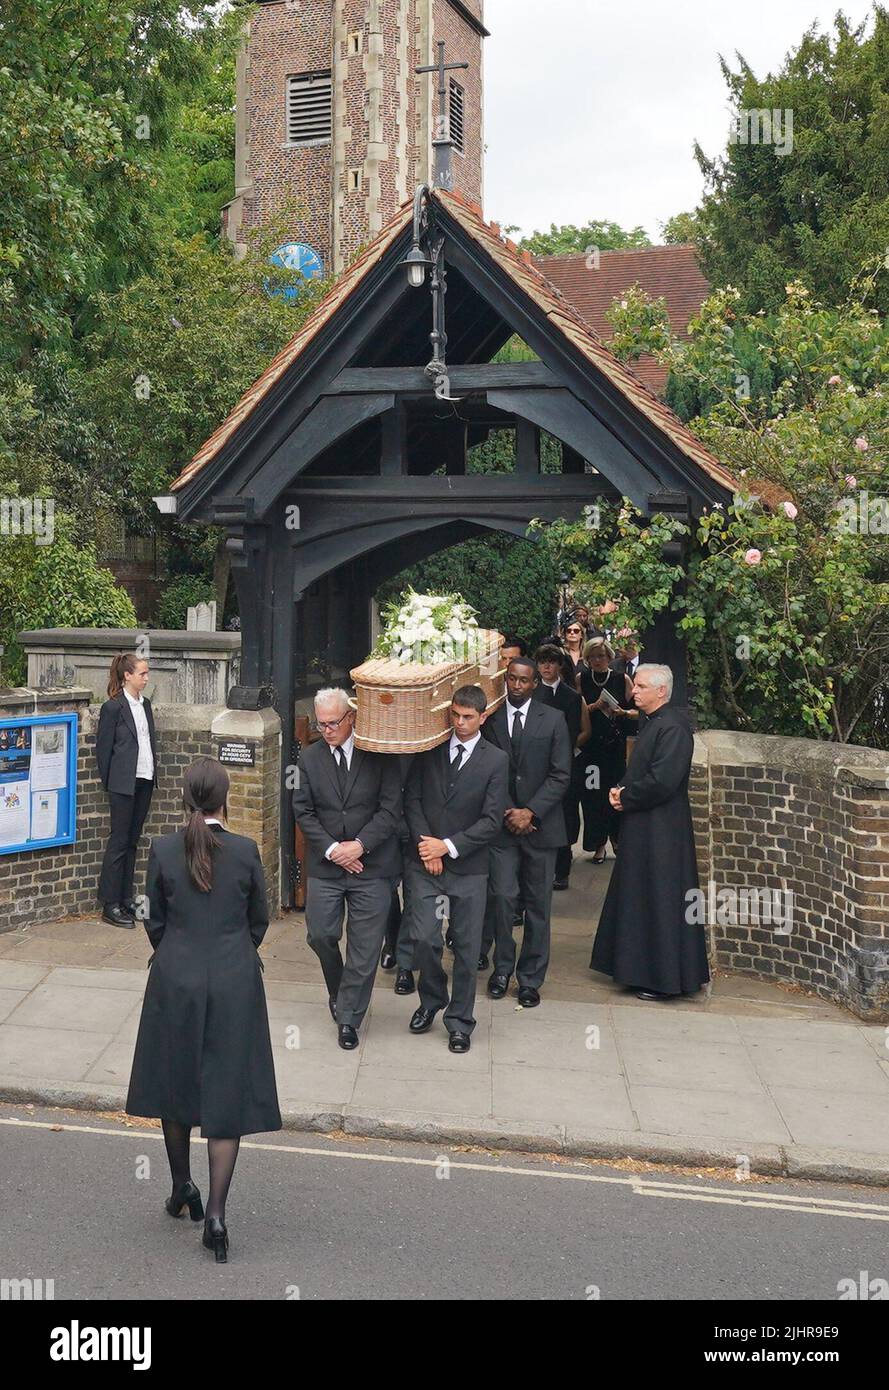 Le cercueil de Dame Deborah James est effectué à la suite de ses funérailles à l'église St Mary's à Barnes, dans l'ouest de Londres. Date de la photo: Mercredi 20 juillet 2022. Banque D'Images